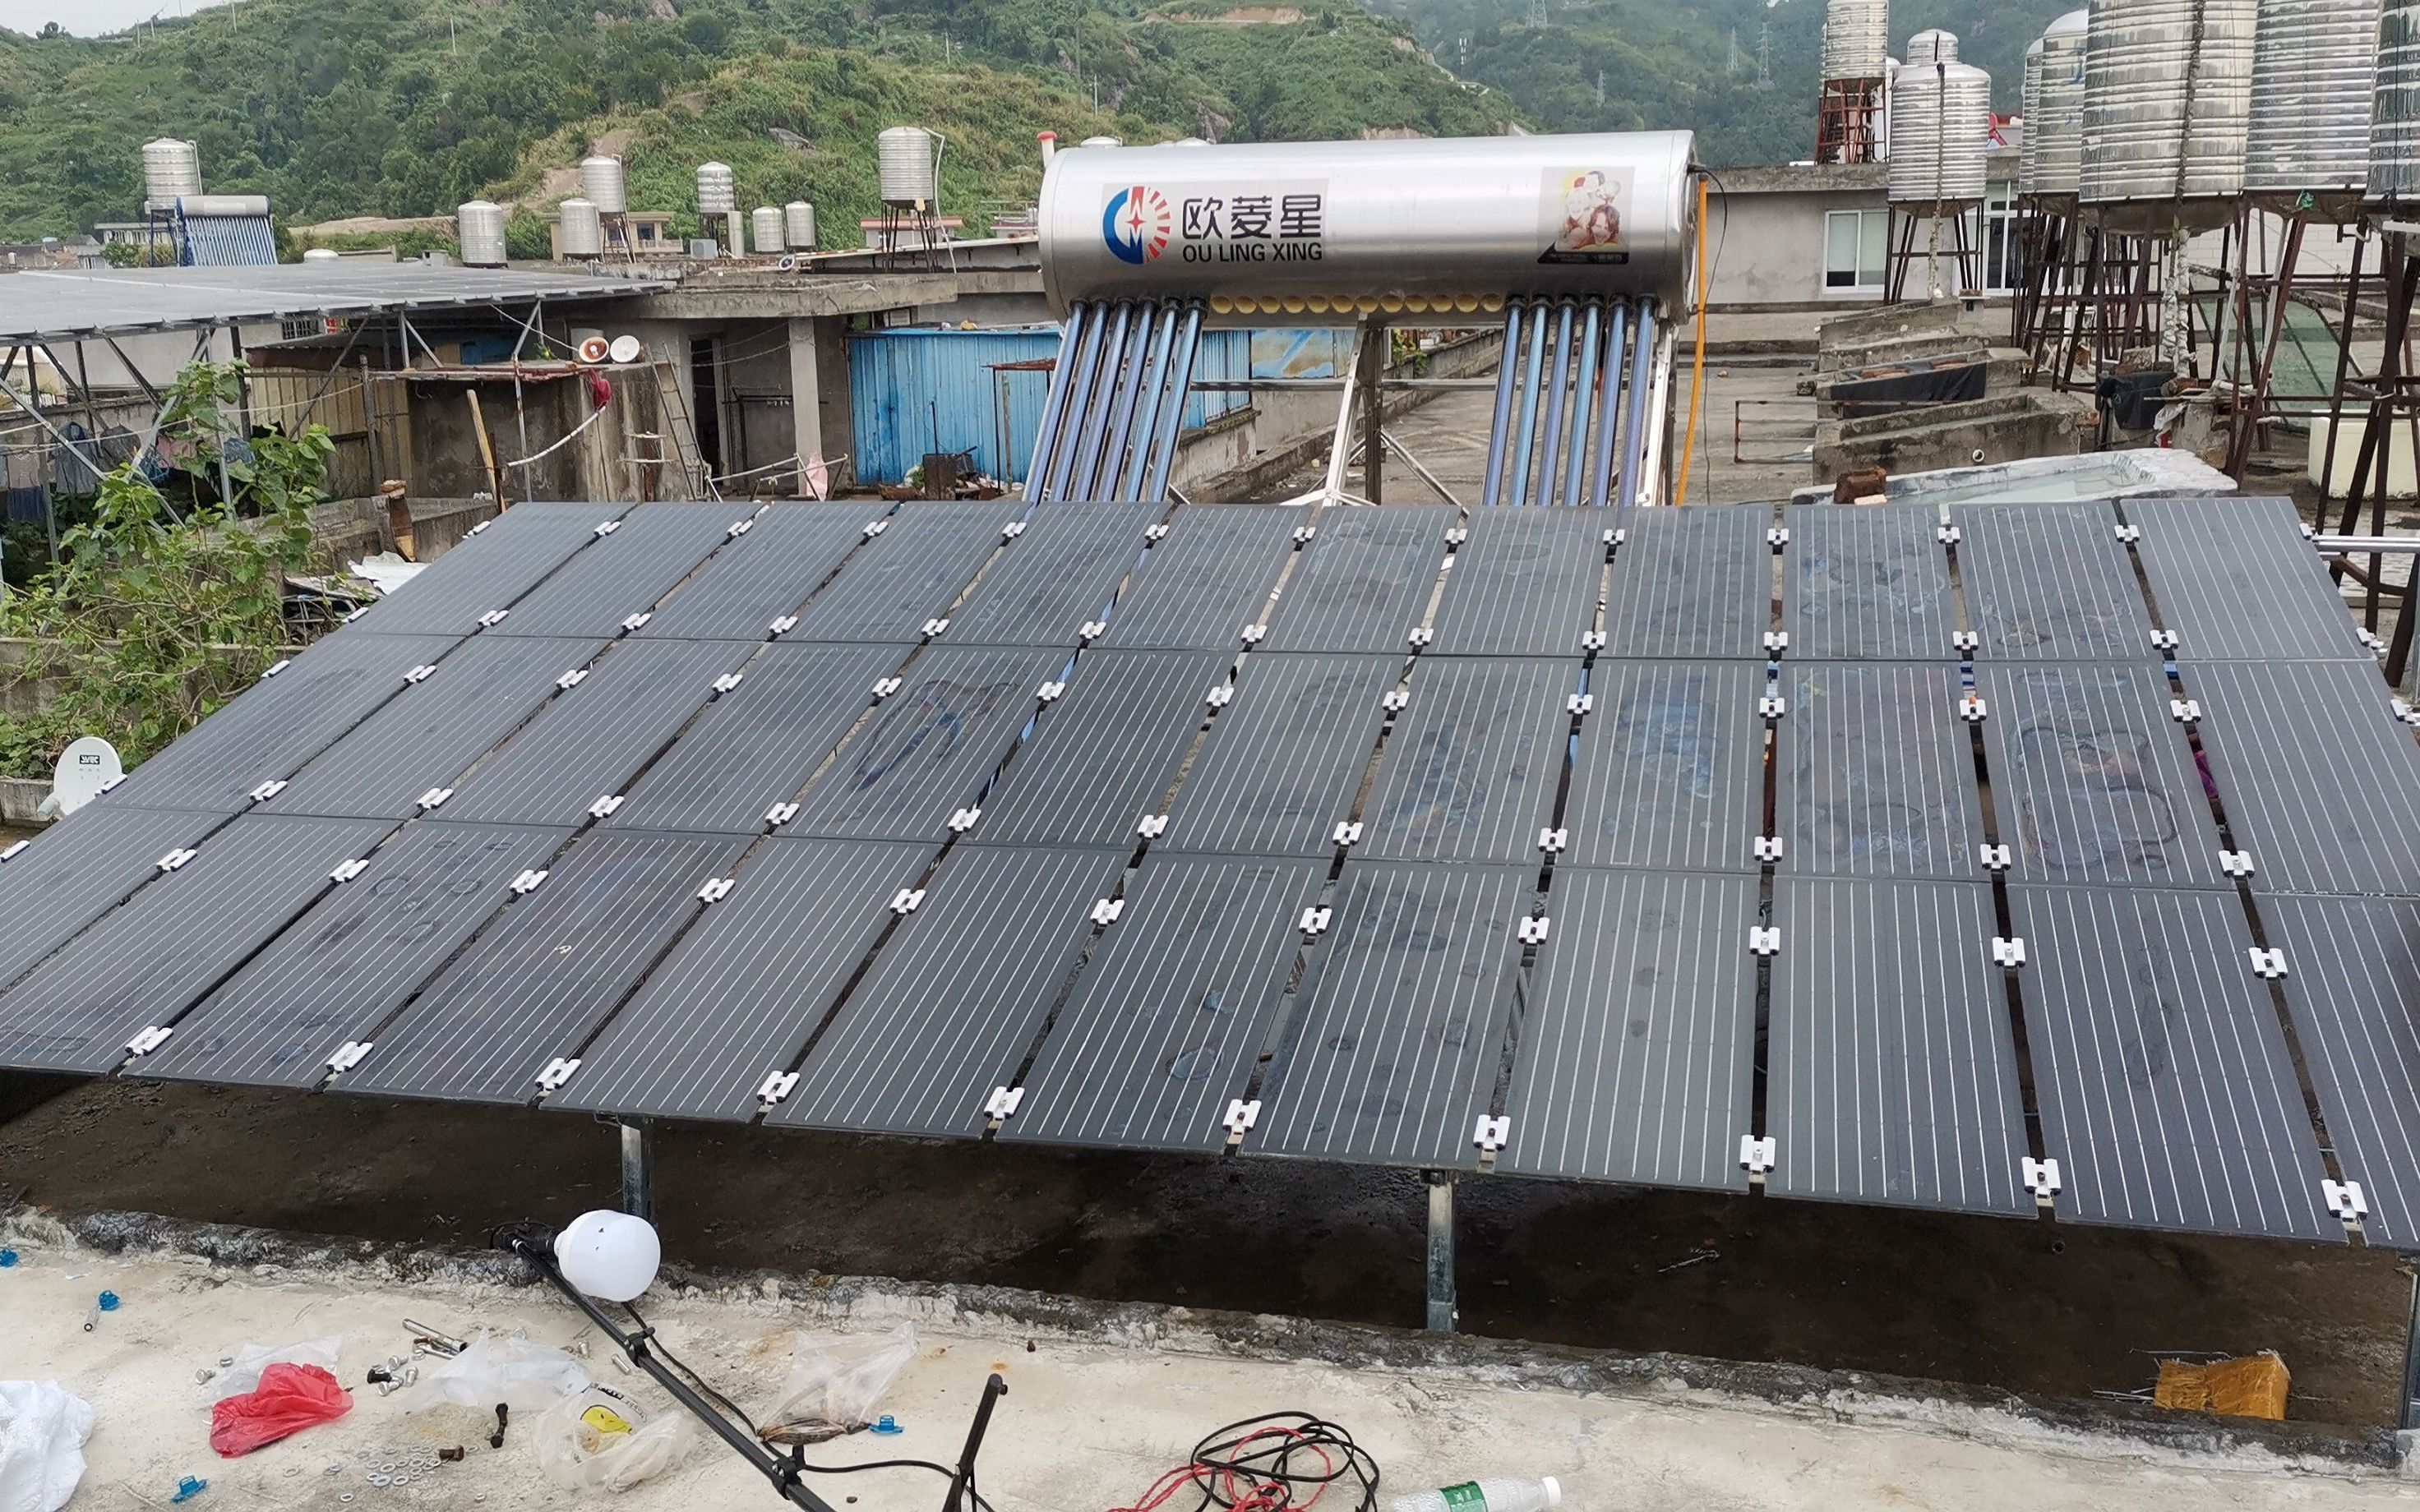 又又又又加装了一组1800瓦太阳能板发电板